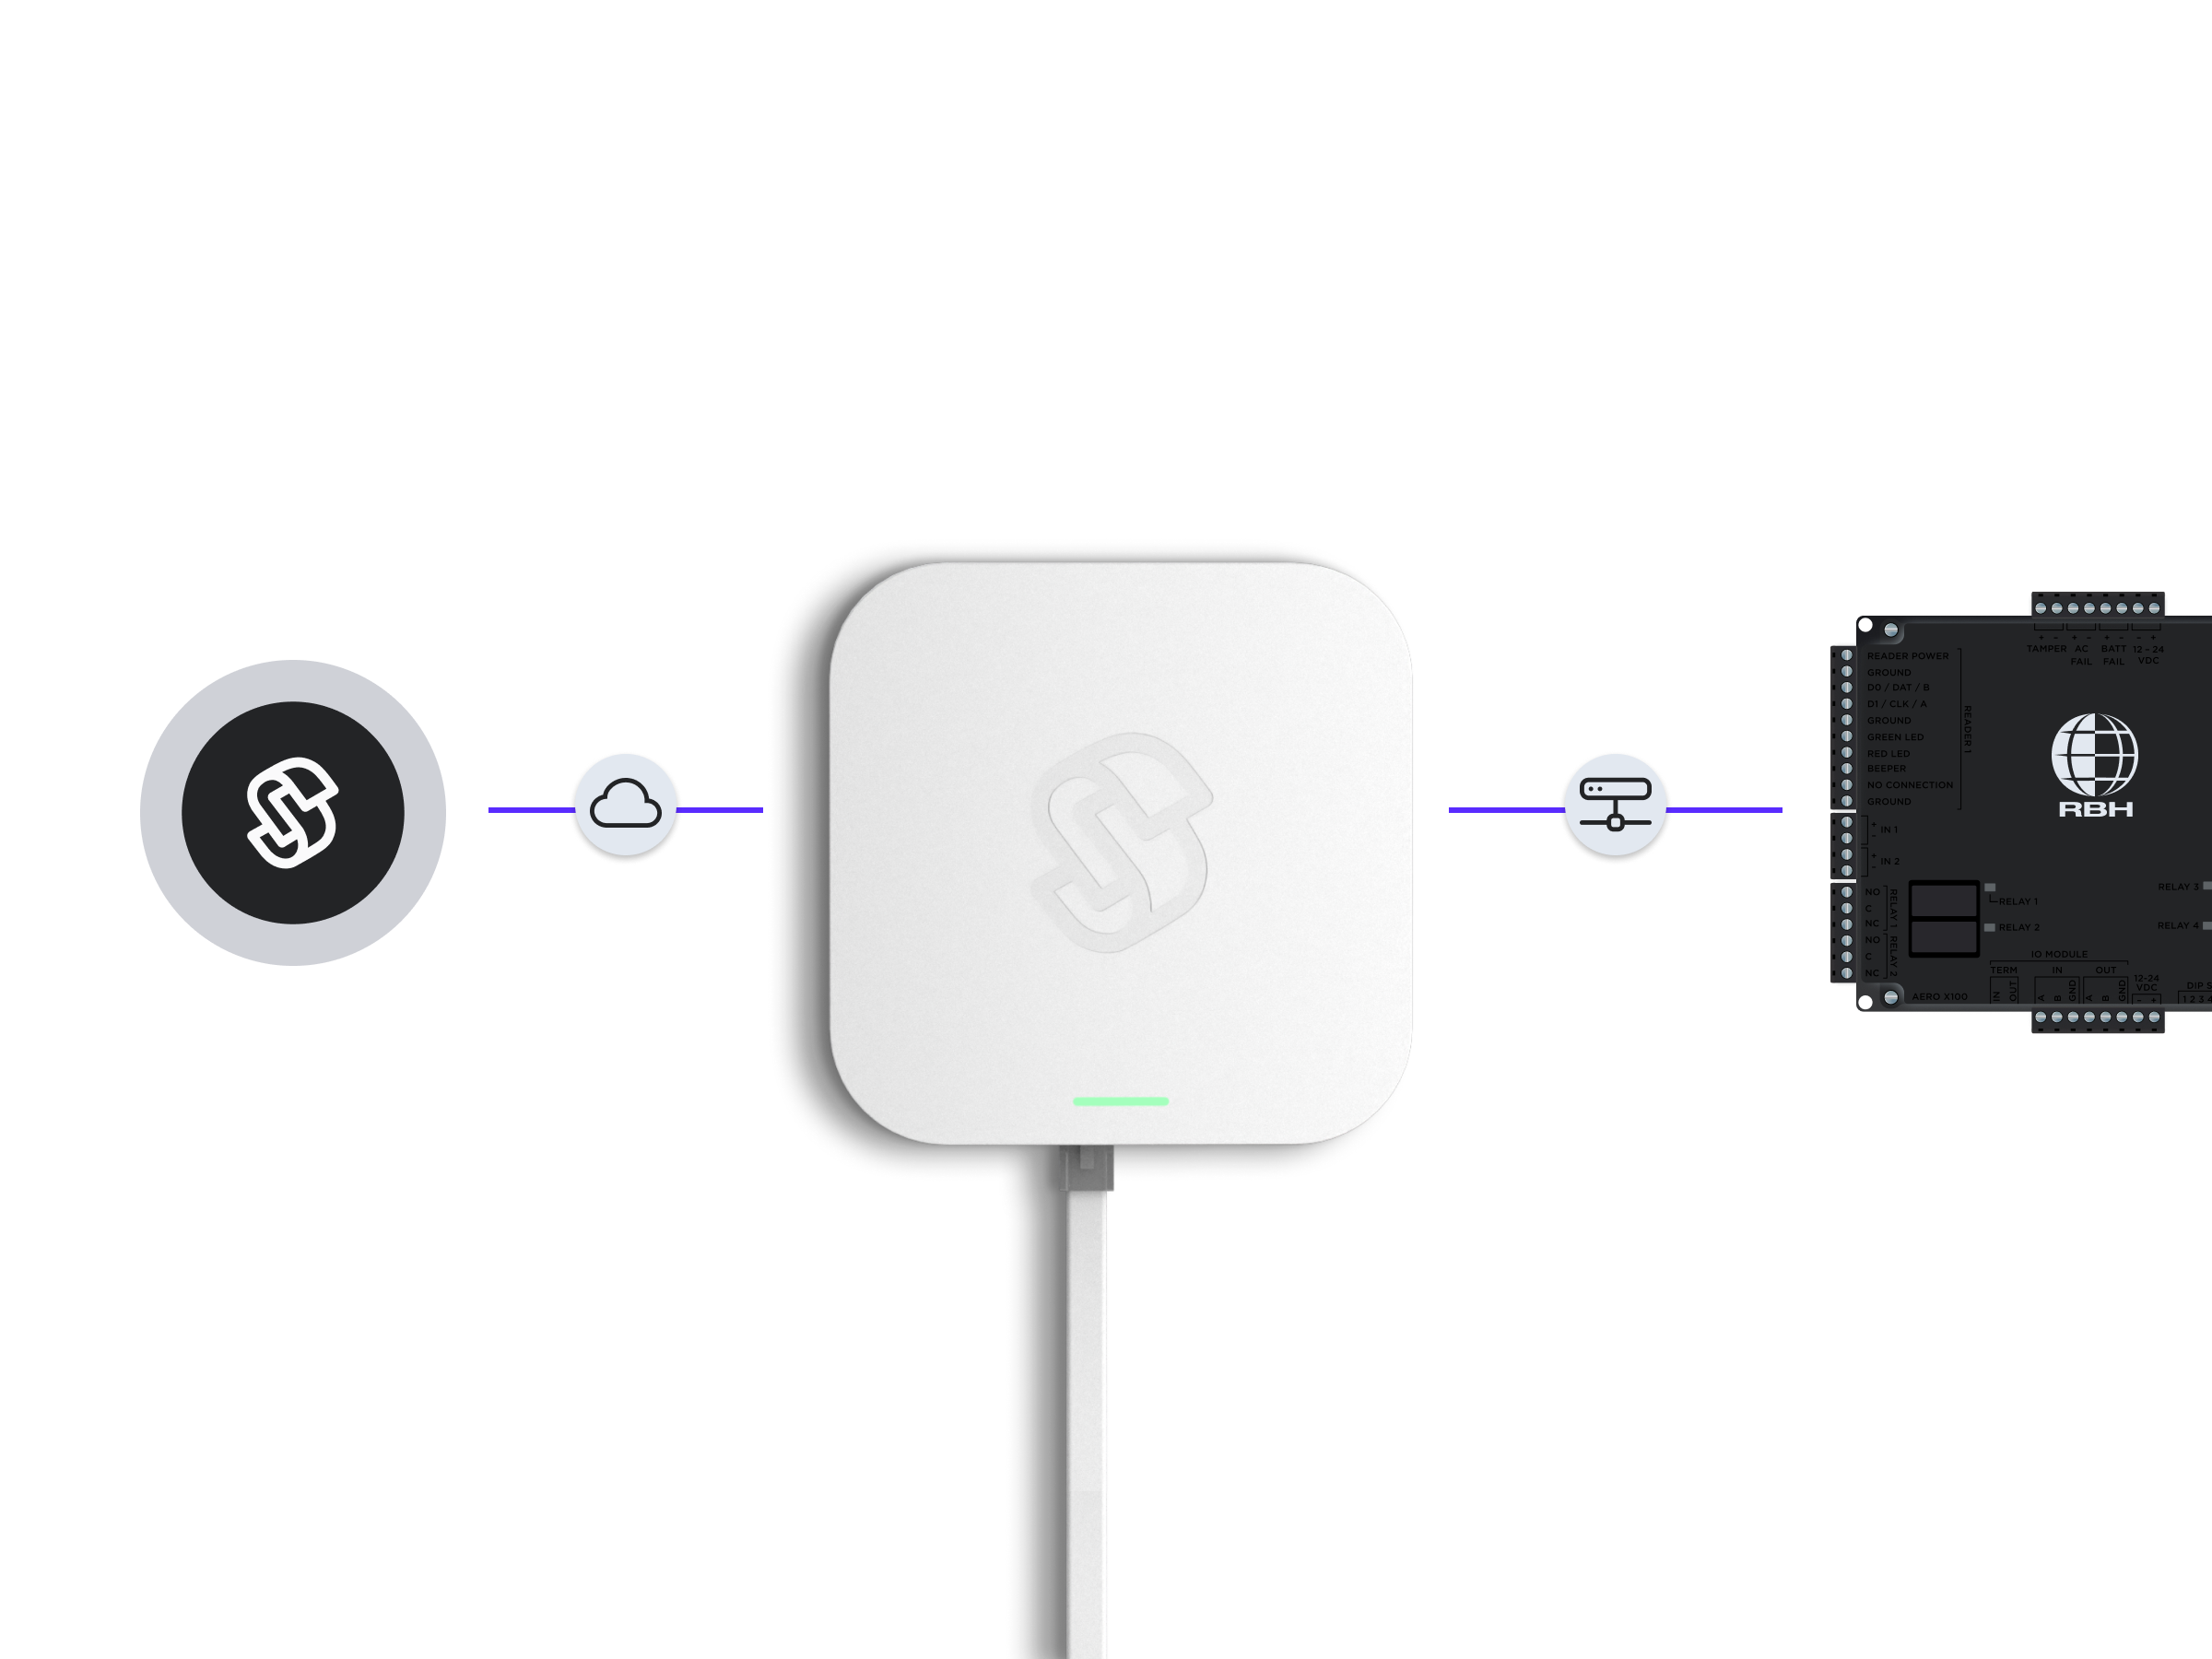 Connect system via Seam Bridge